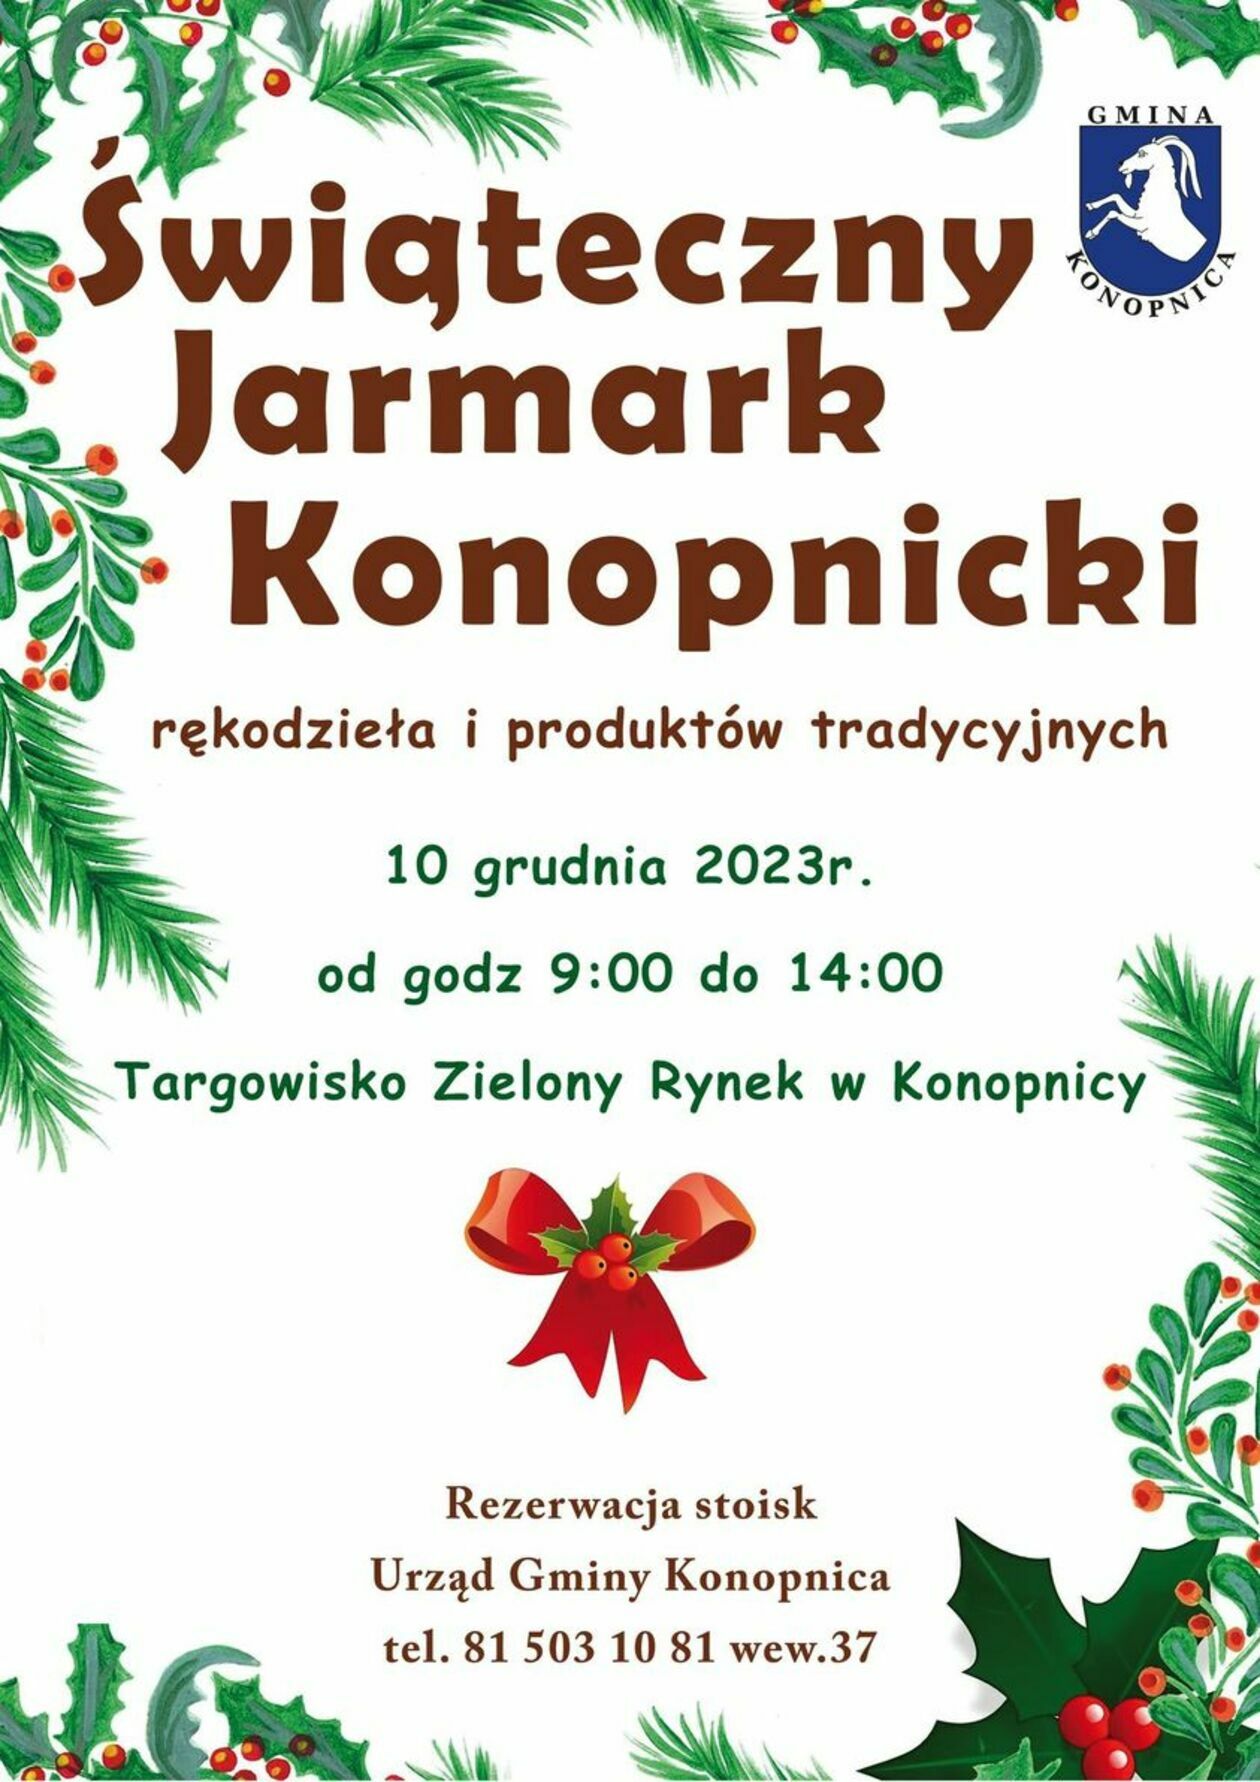  <p>Data: 10 grudnia w godzinach 9-14</p>
<p>Miejsce: Targowisko Zielony Rynek w Konopnicy</p>